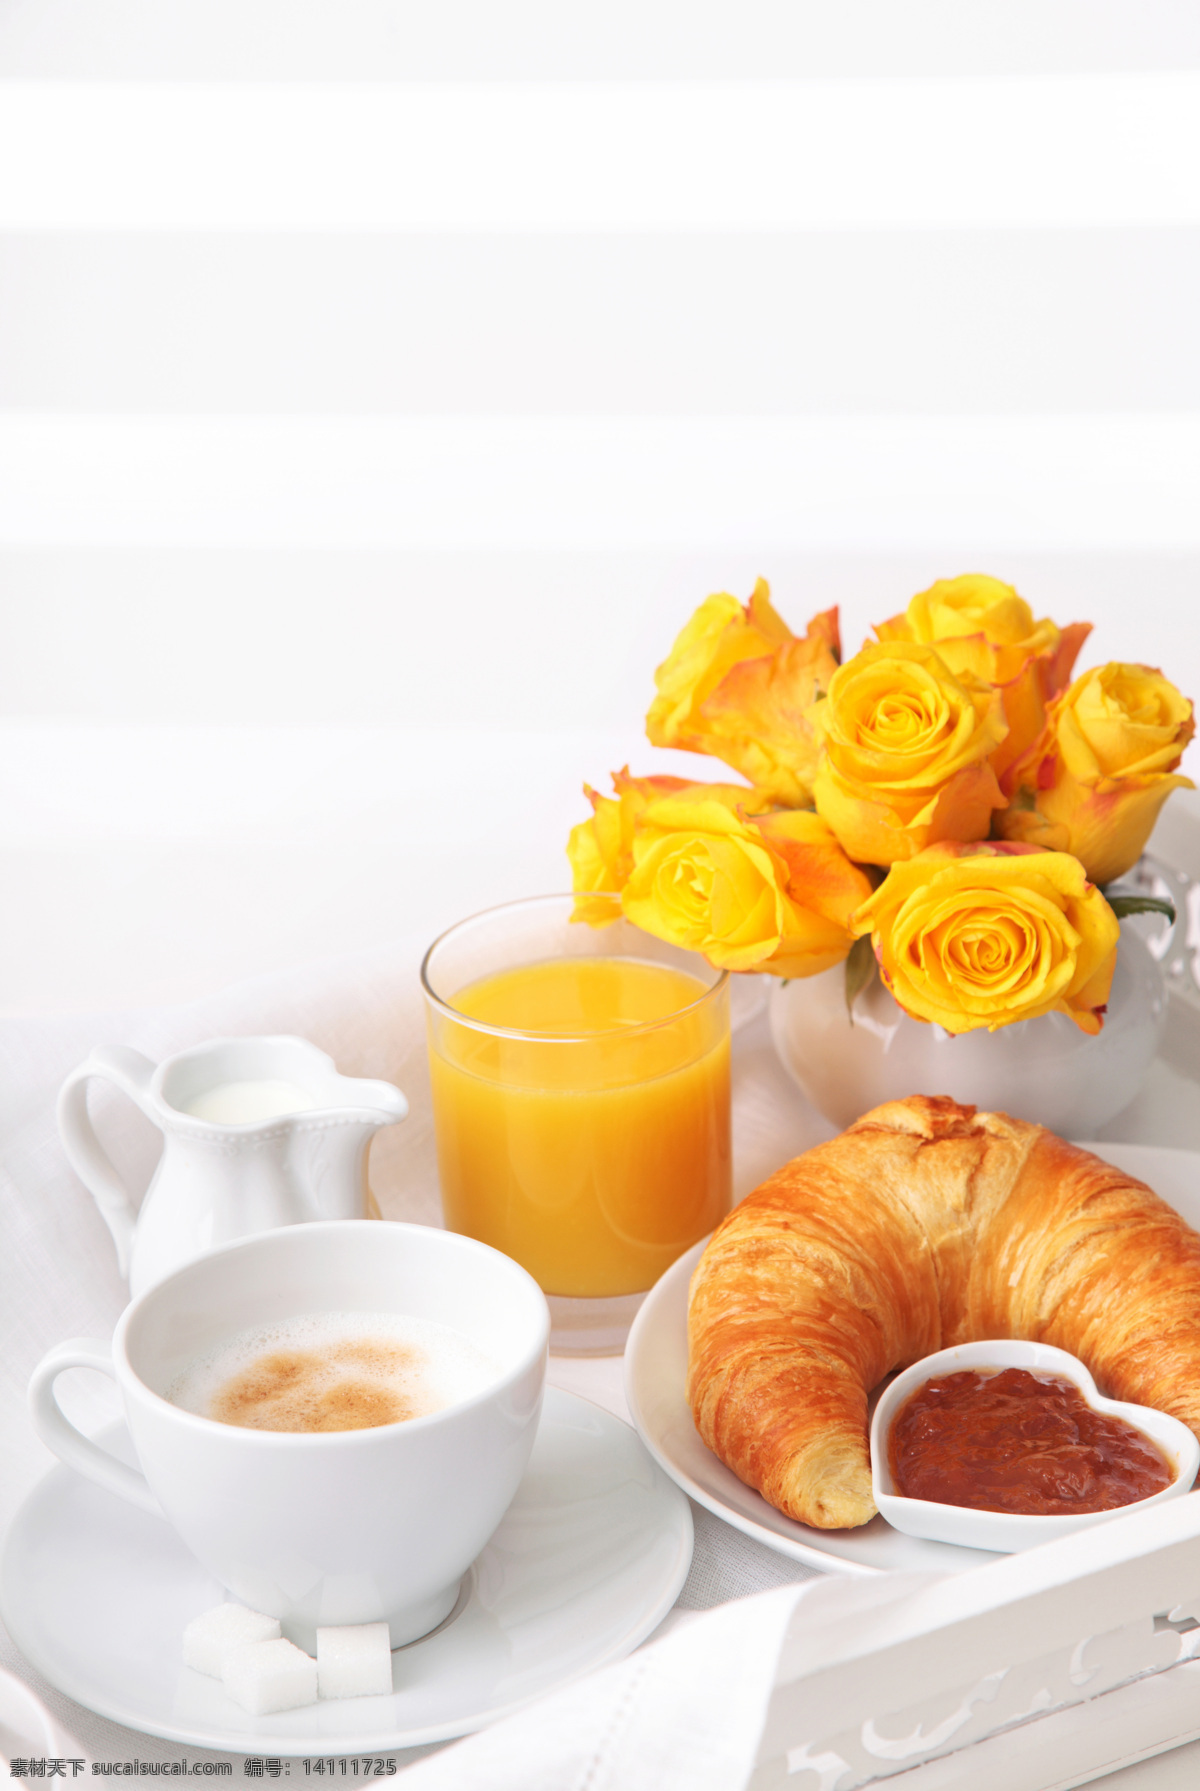 咖啡 面包 羊角面包 橙汁 早餐 咖啡图片 餐饮美食